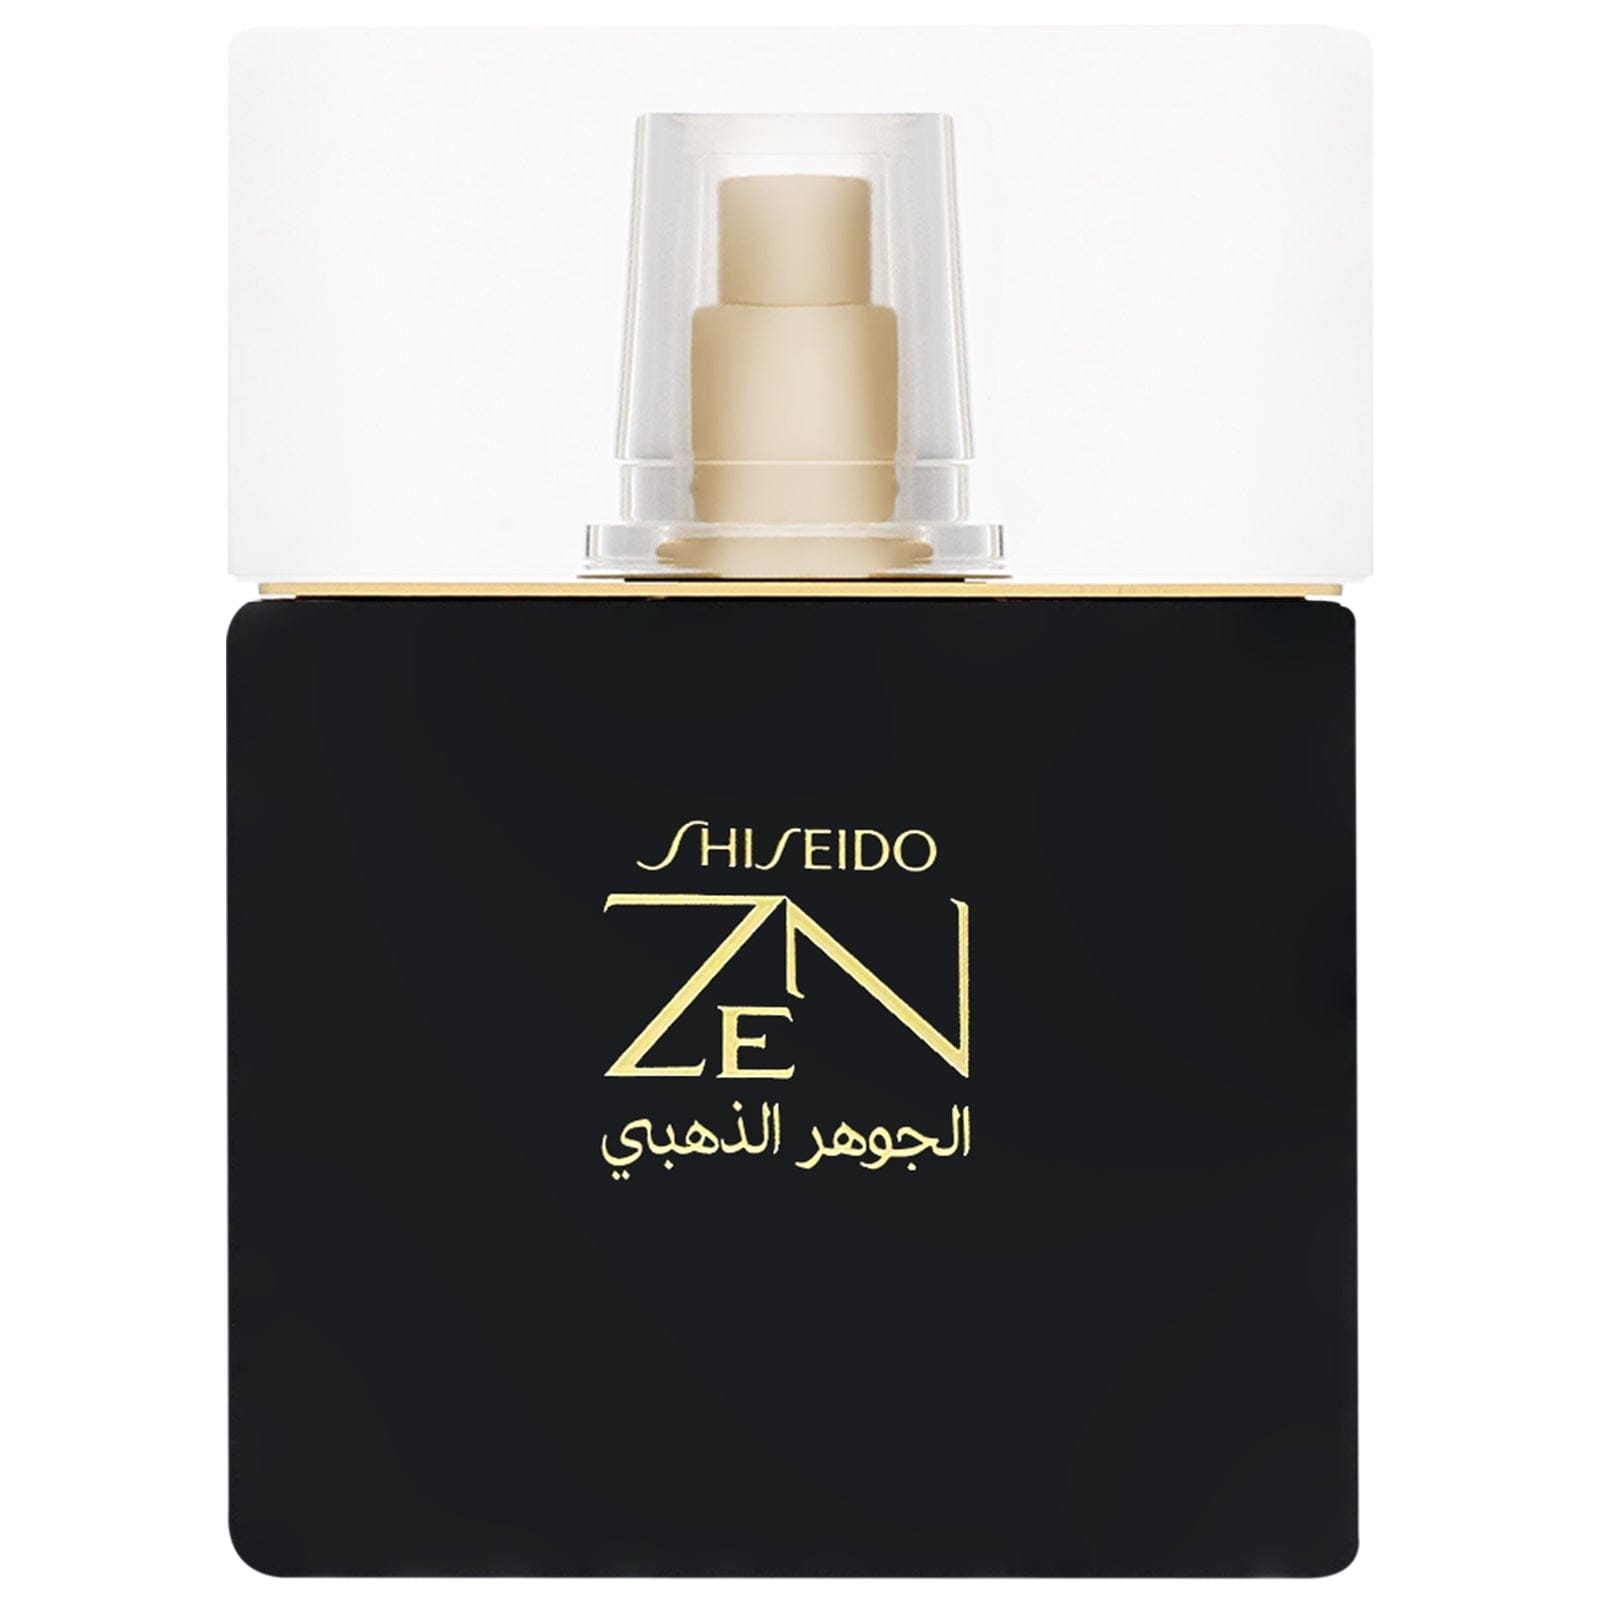 Shiseido Zen Gold Elixir Eau de Parfum 100 mL / Female